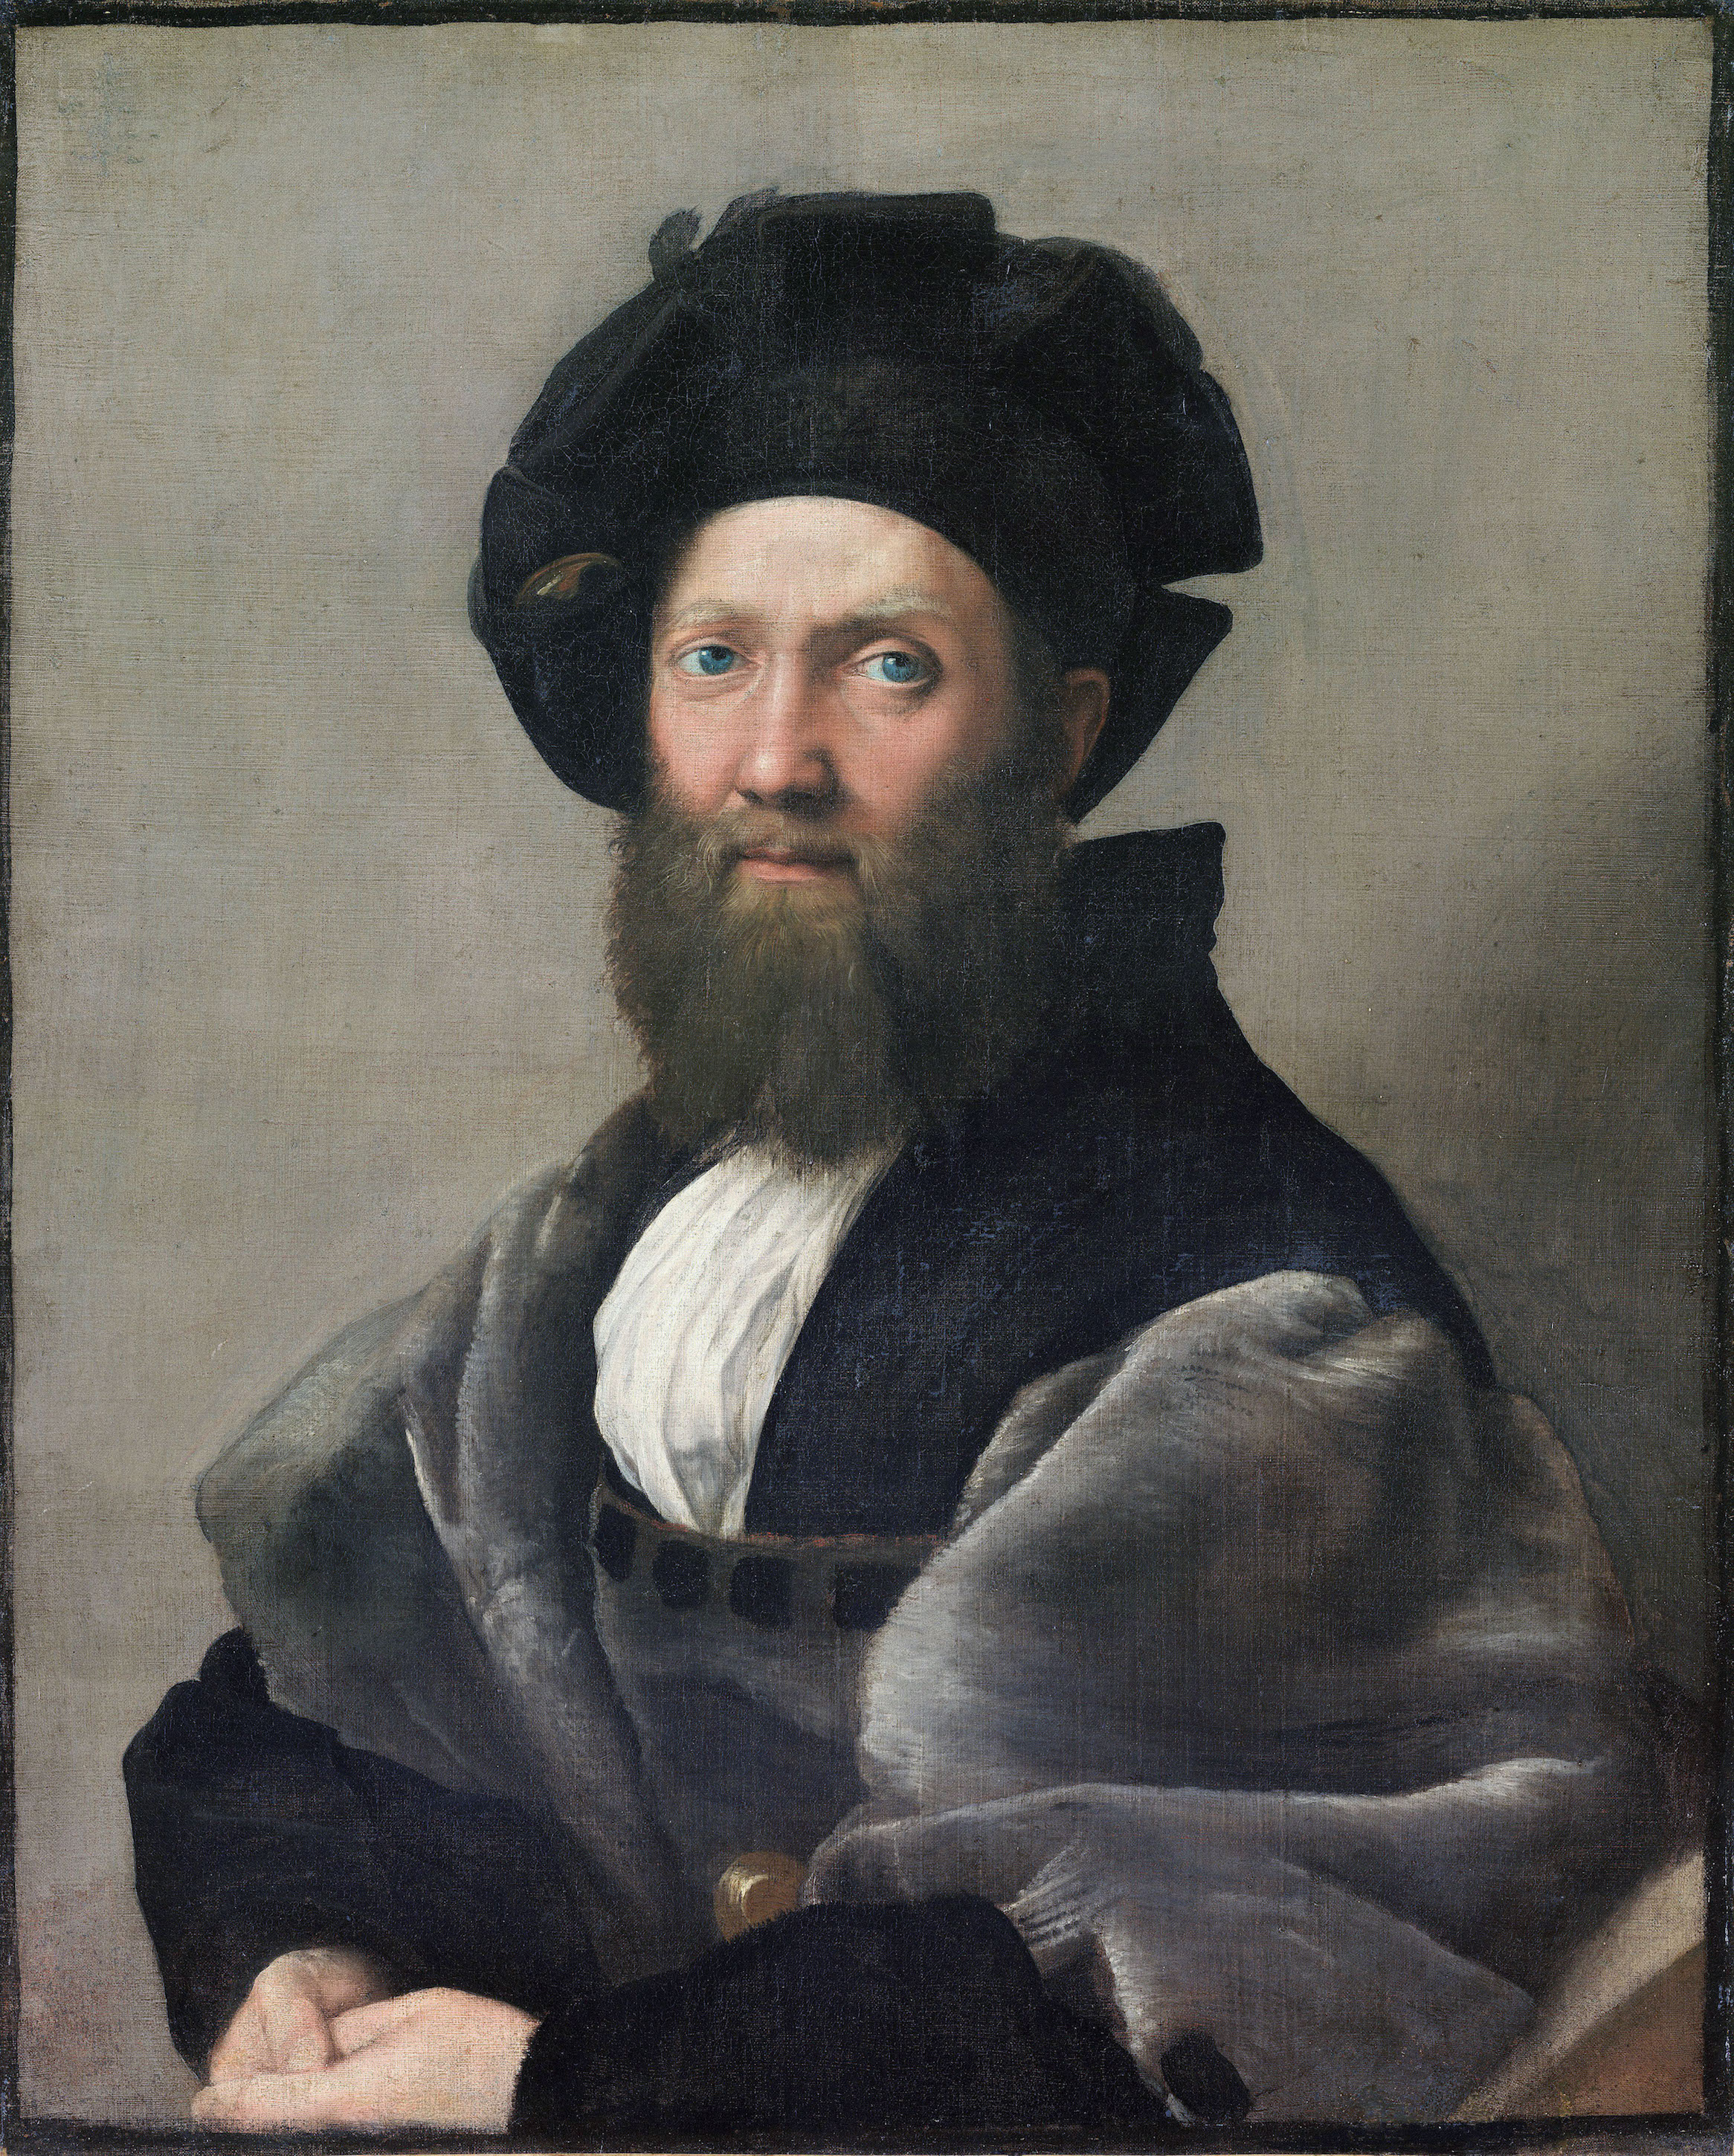 Balthazar Castiglione by Raphael Santi - 1514-1515 - 82 x 67 cm Musée du Louvre